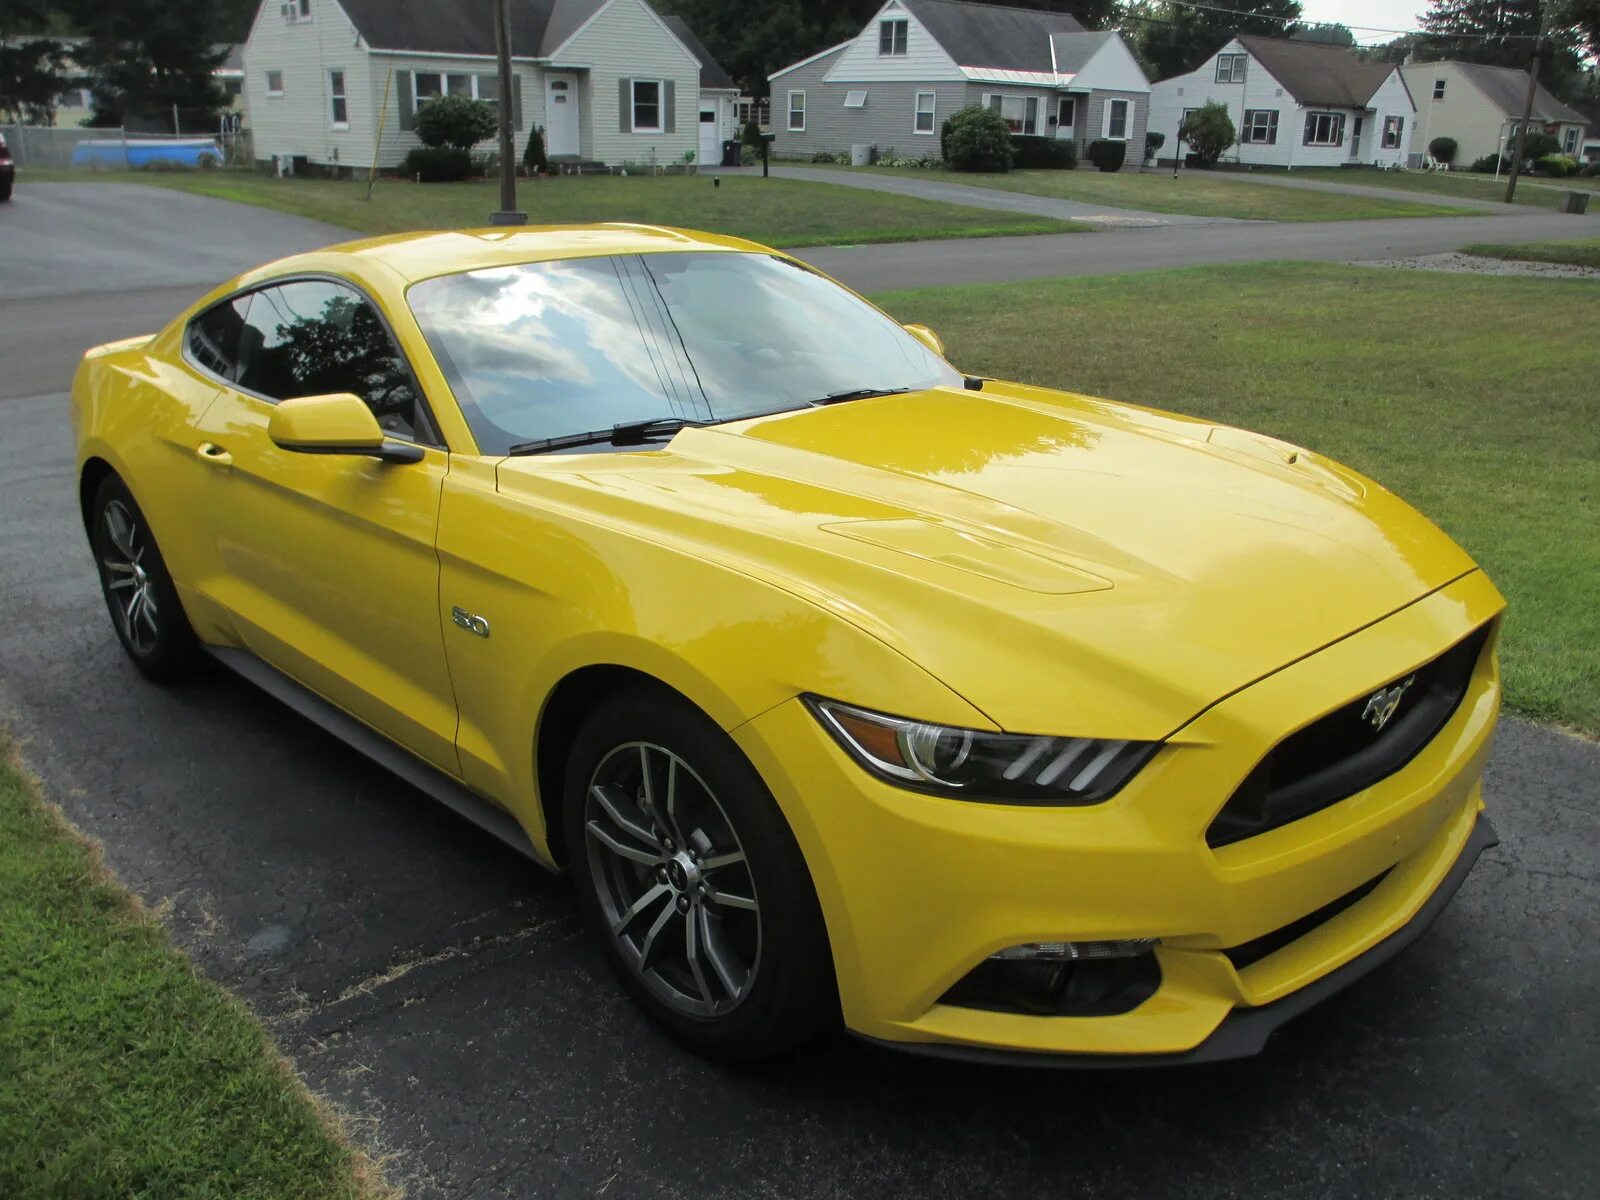 Где купить желтую. Форд Мустанг 2015 желтый. Форд Мустанг gt 2015 желтый. Форд Мустанг 2015. Ford Mustang желтый.